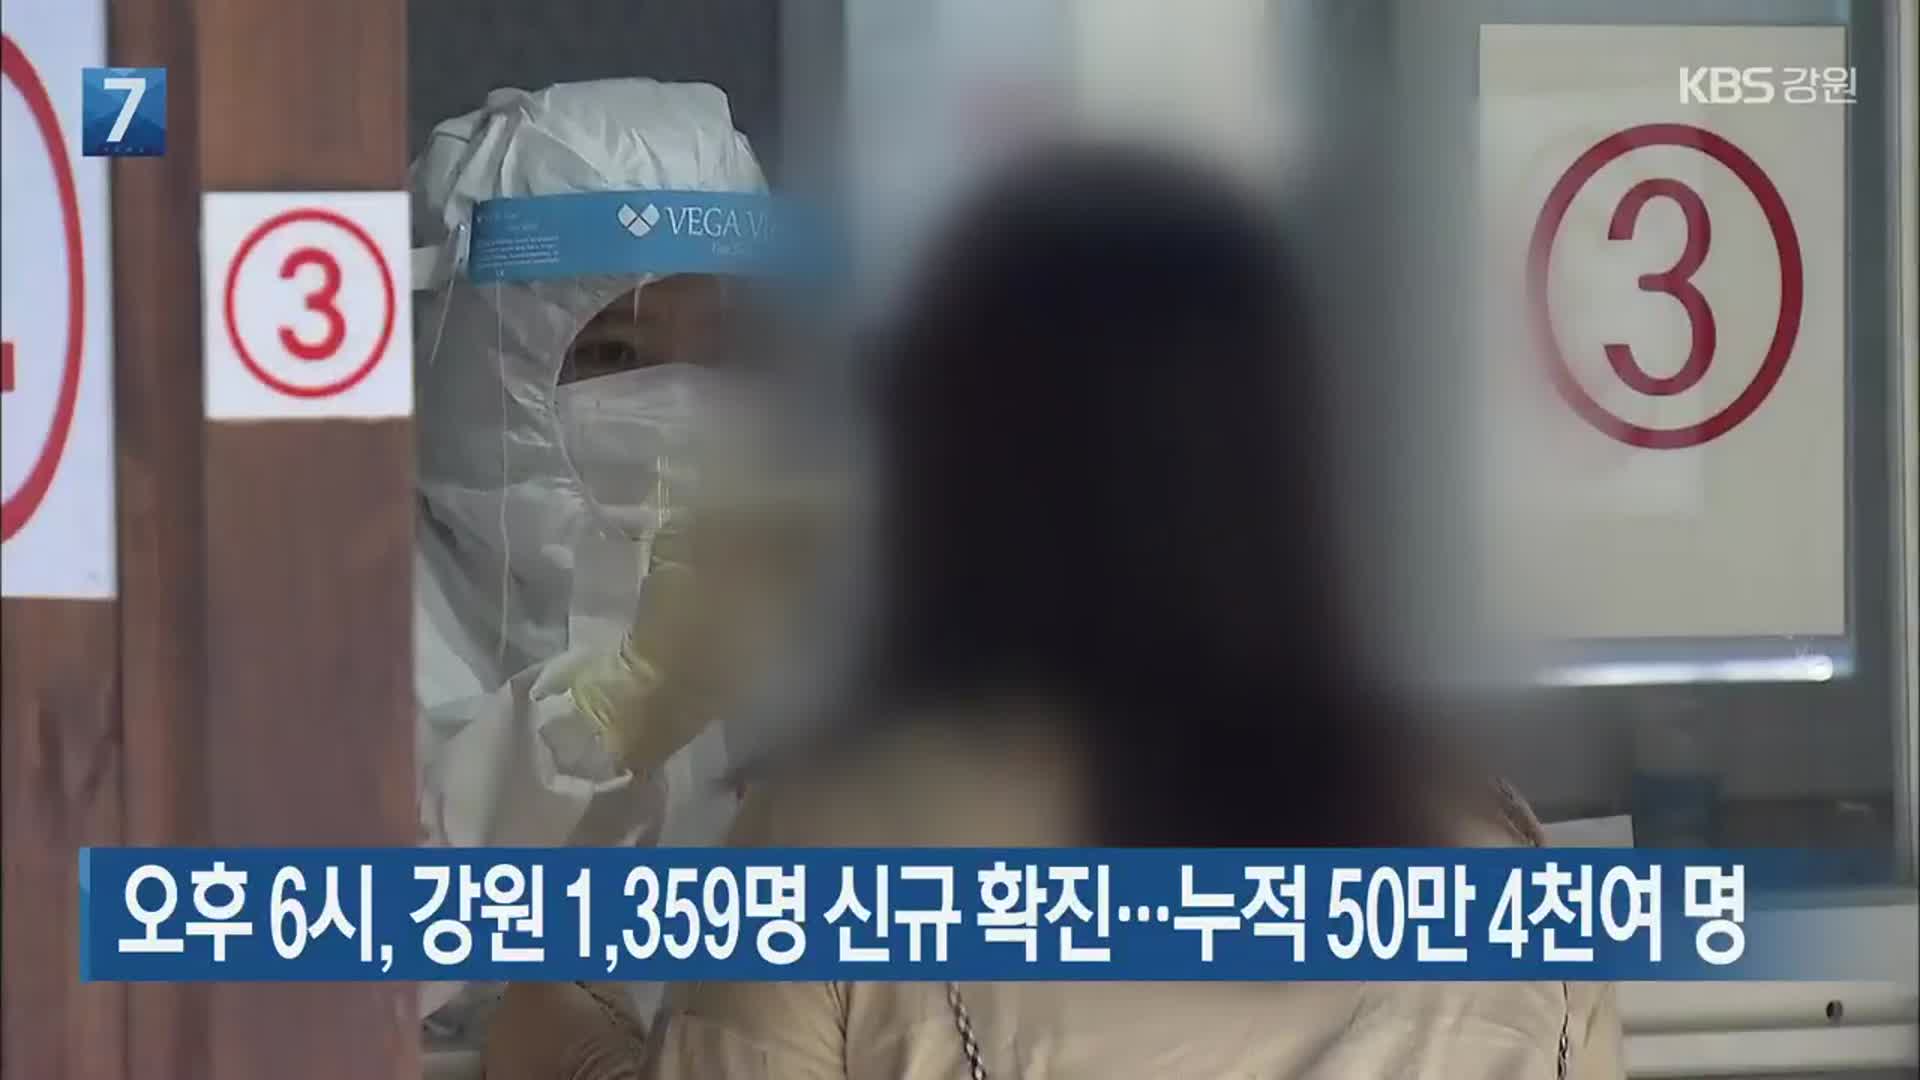 오후 6시, 강원 1,359명 신규 확진…누적 50만 4천여 명